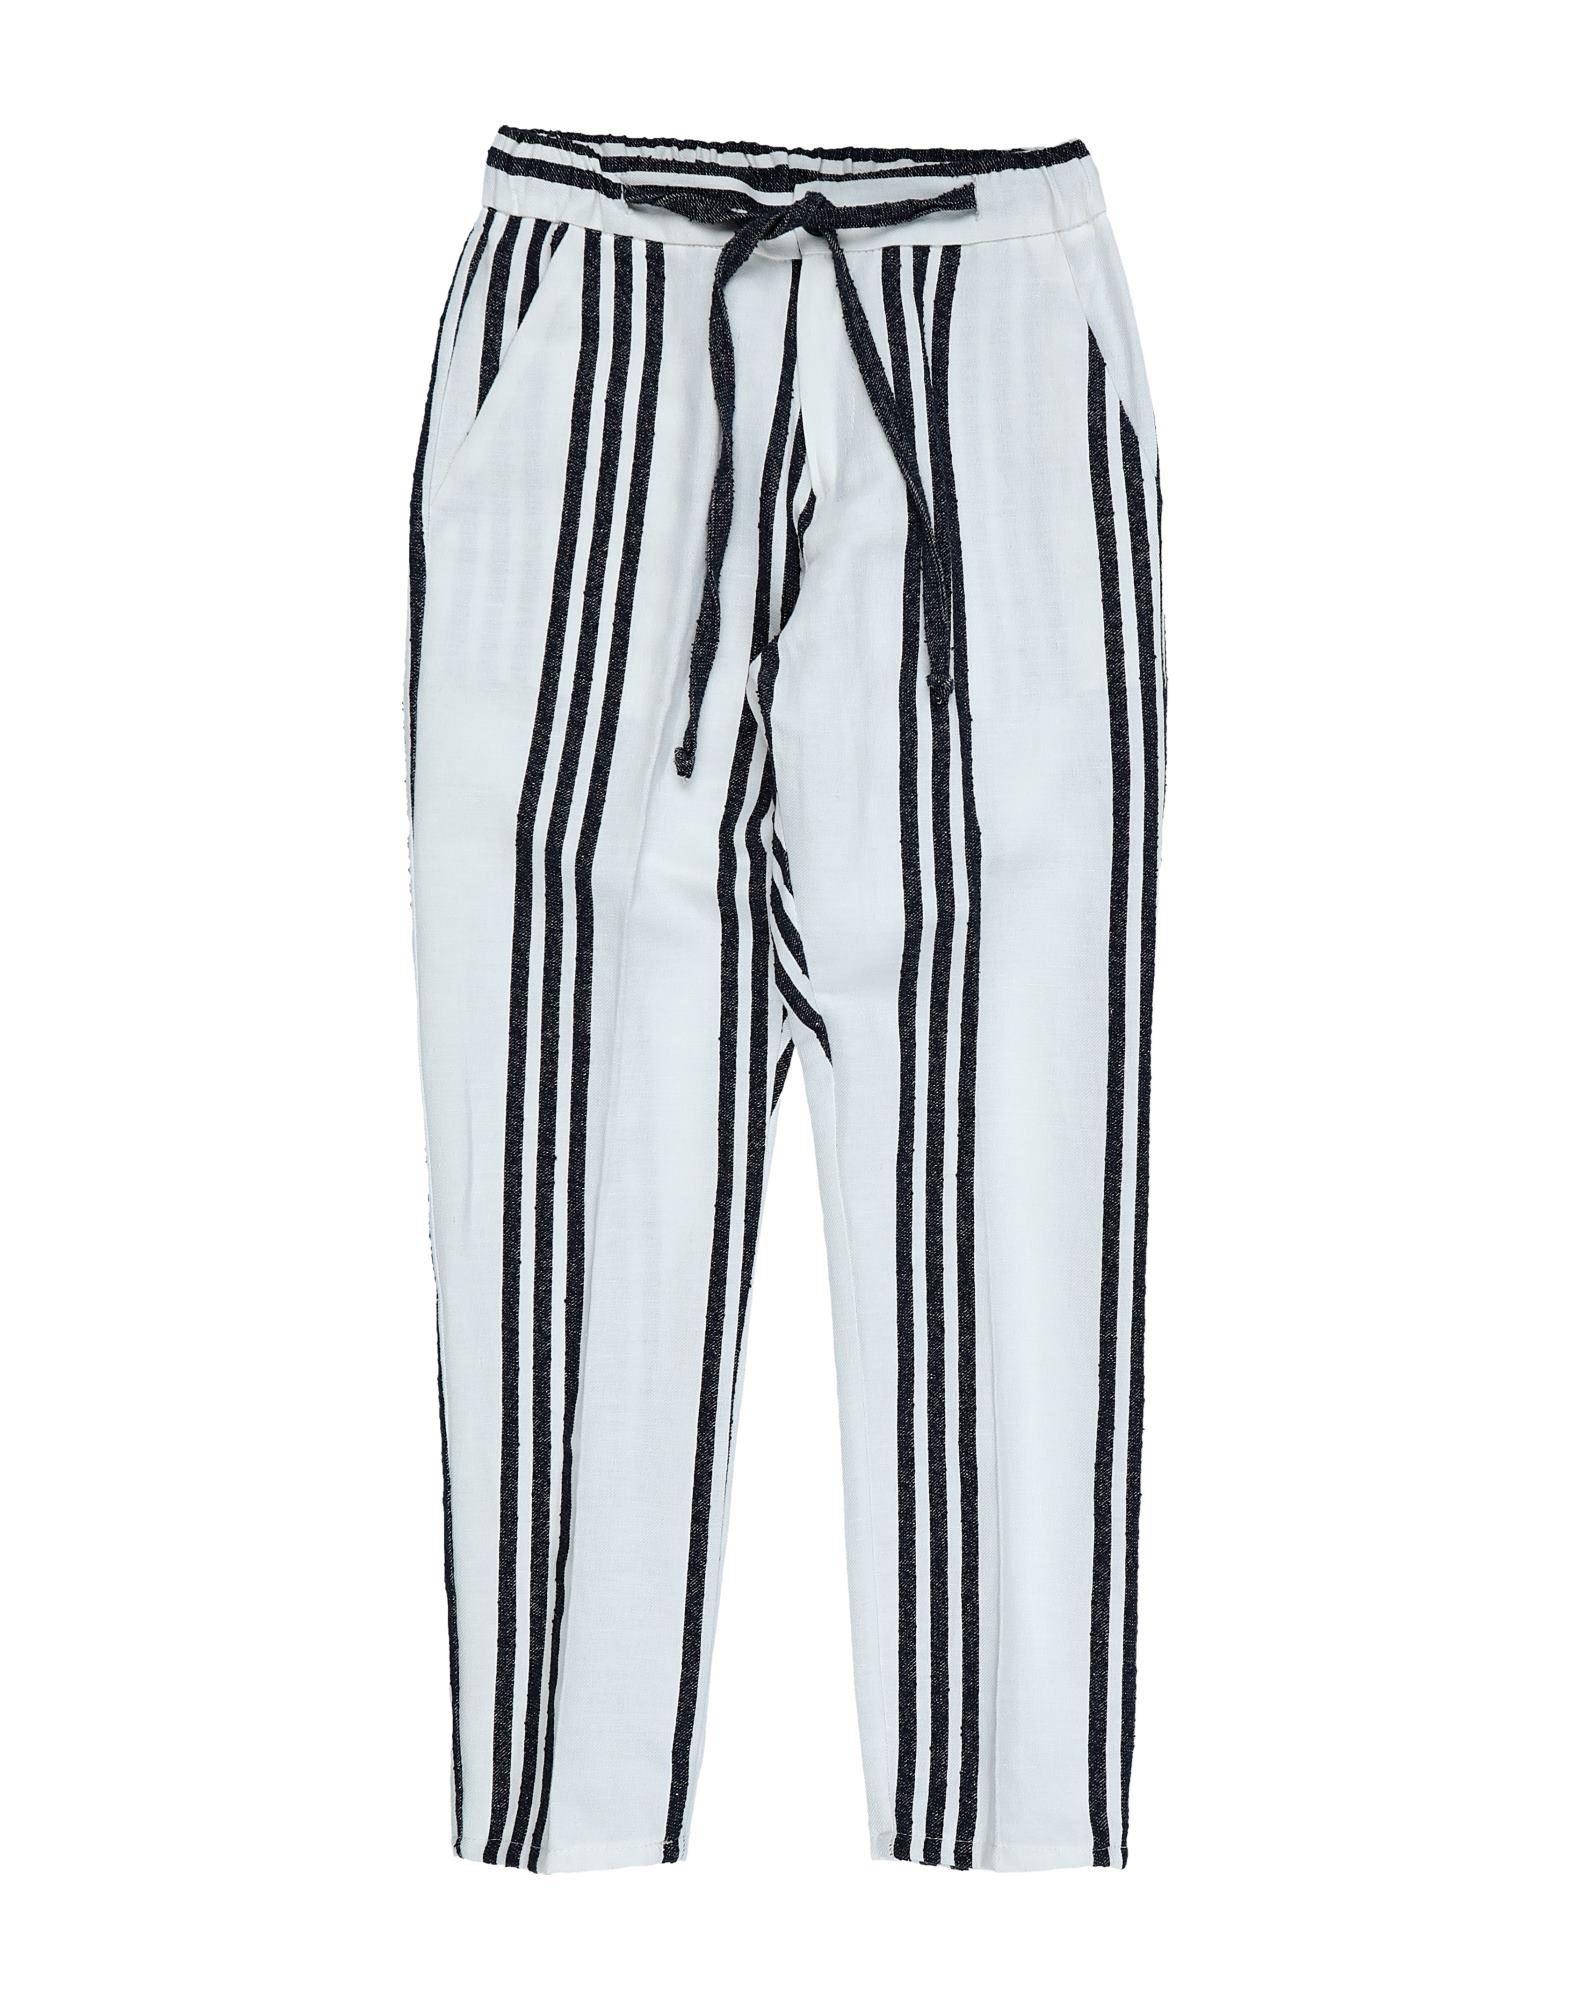 Manuell & Frank Kids' Pants In White | ModeSens